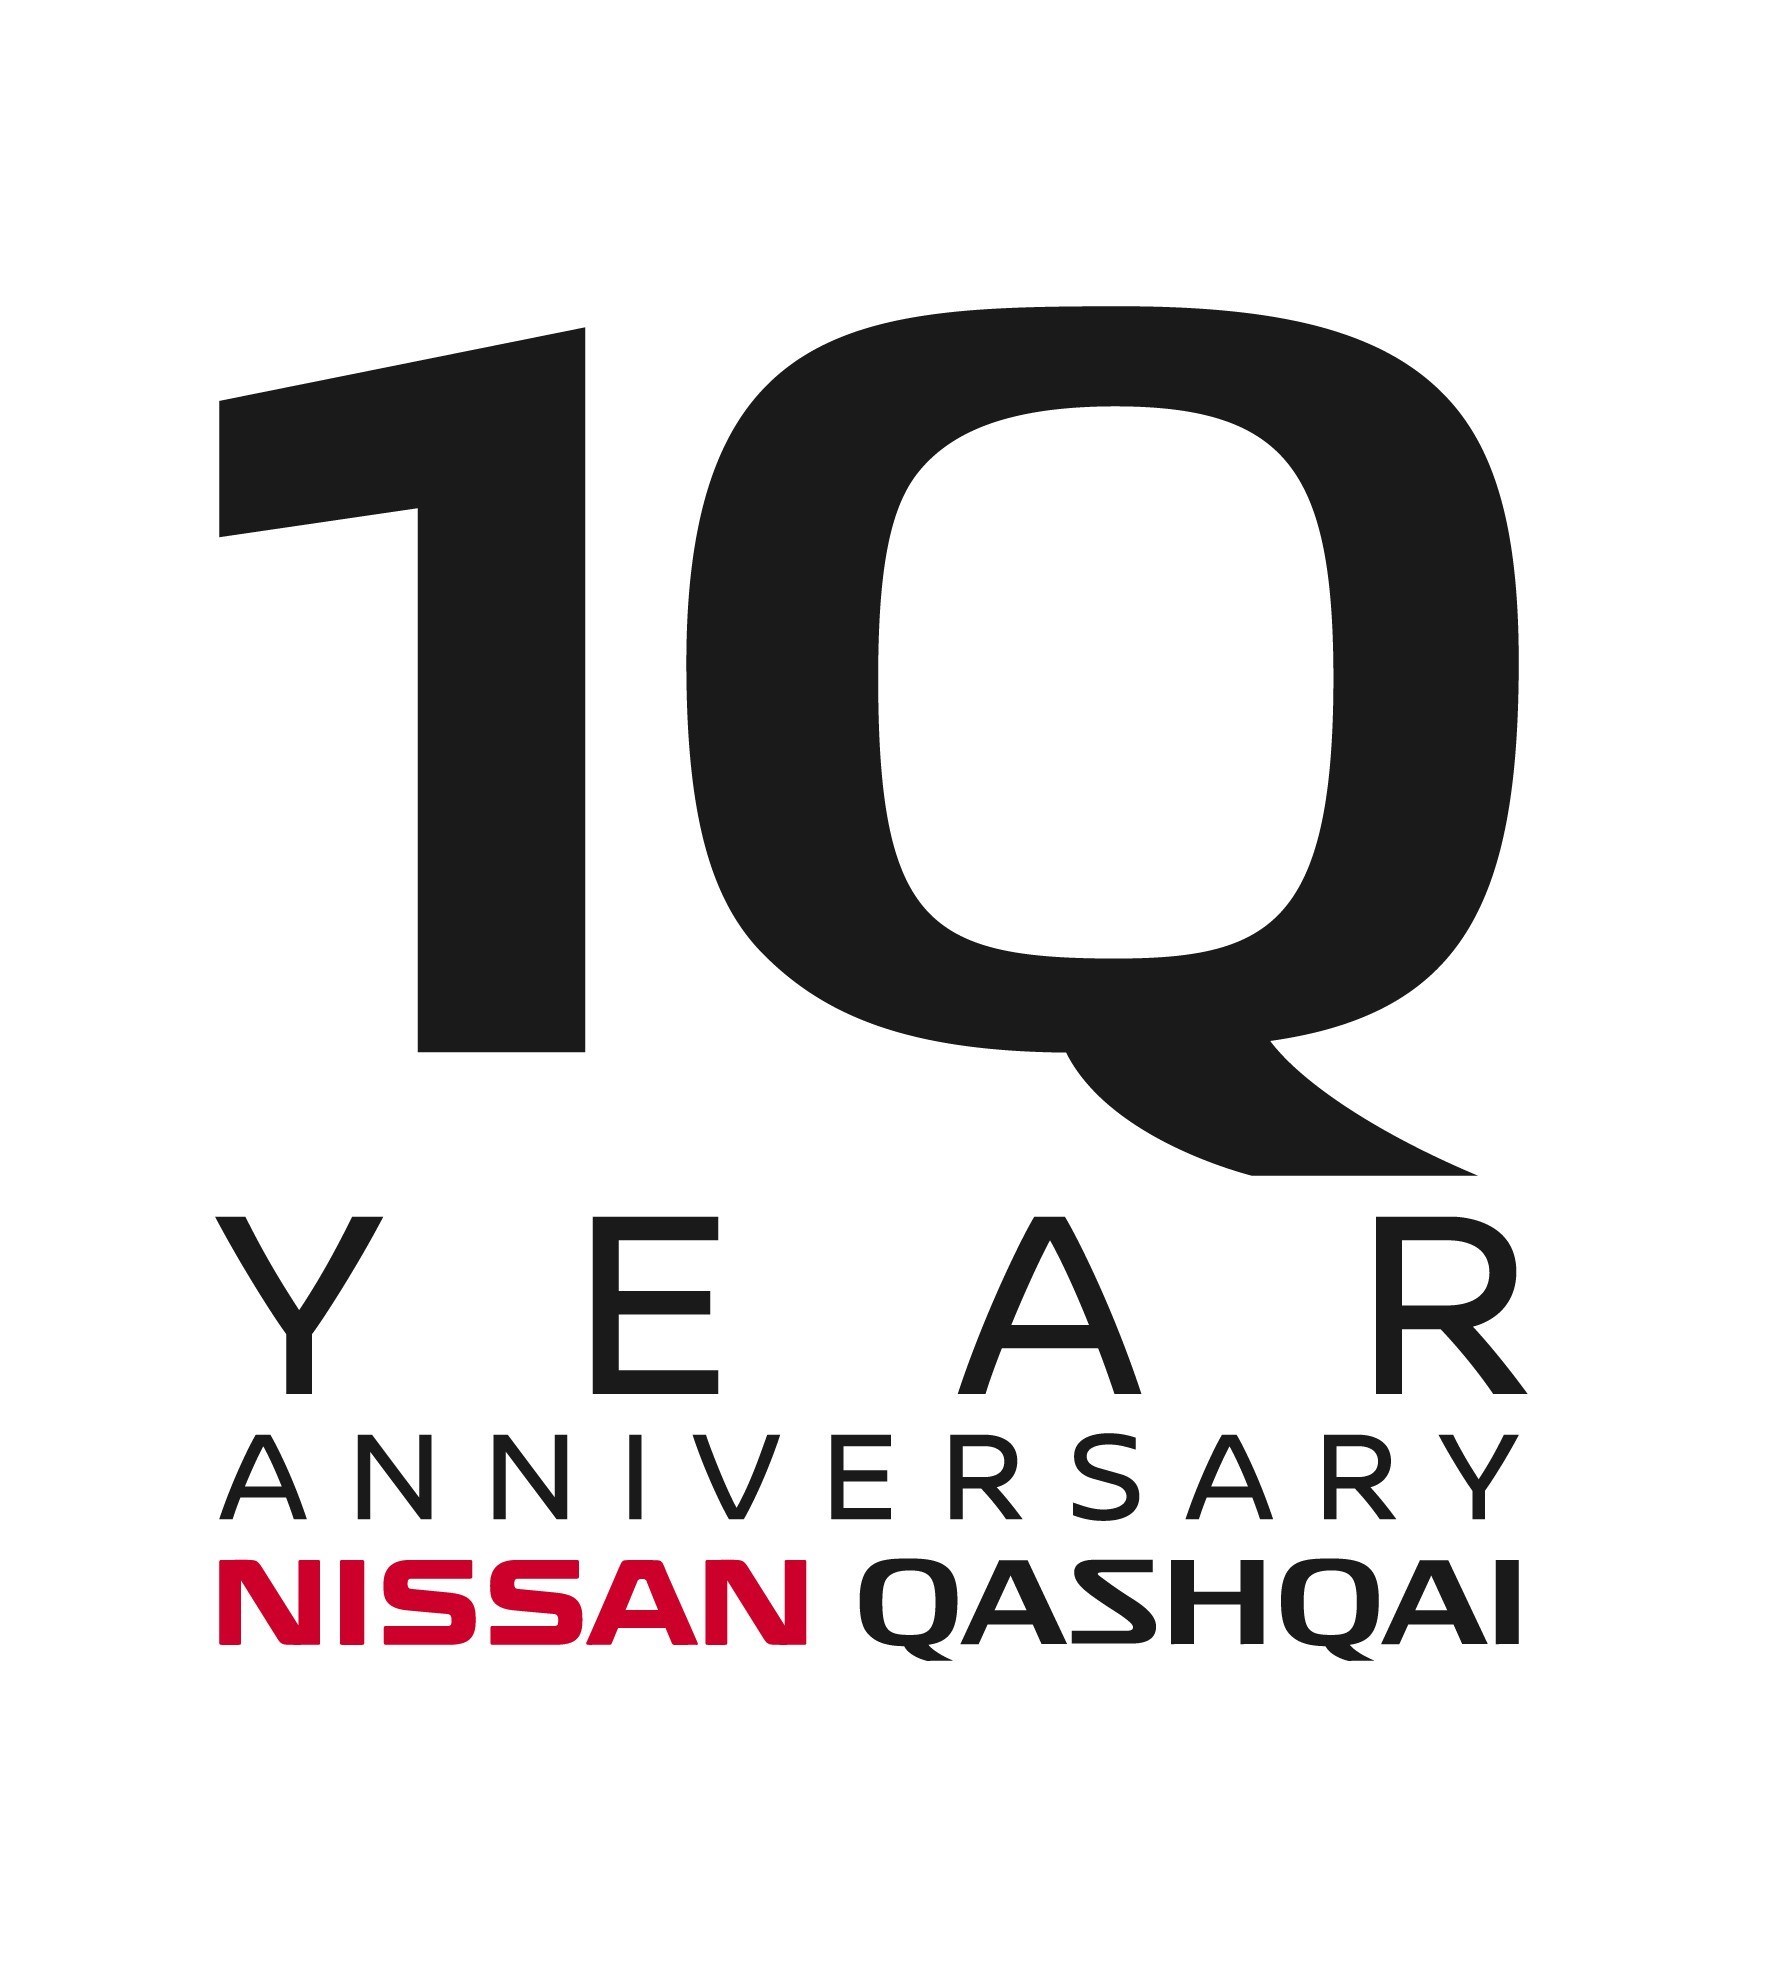 Nissan Qashqai 10th Anniversary